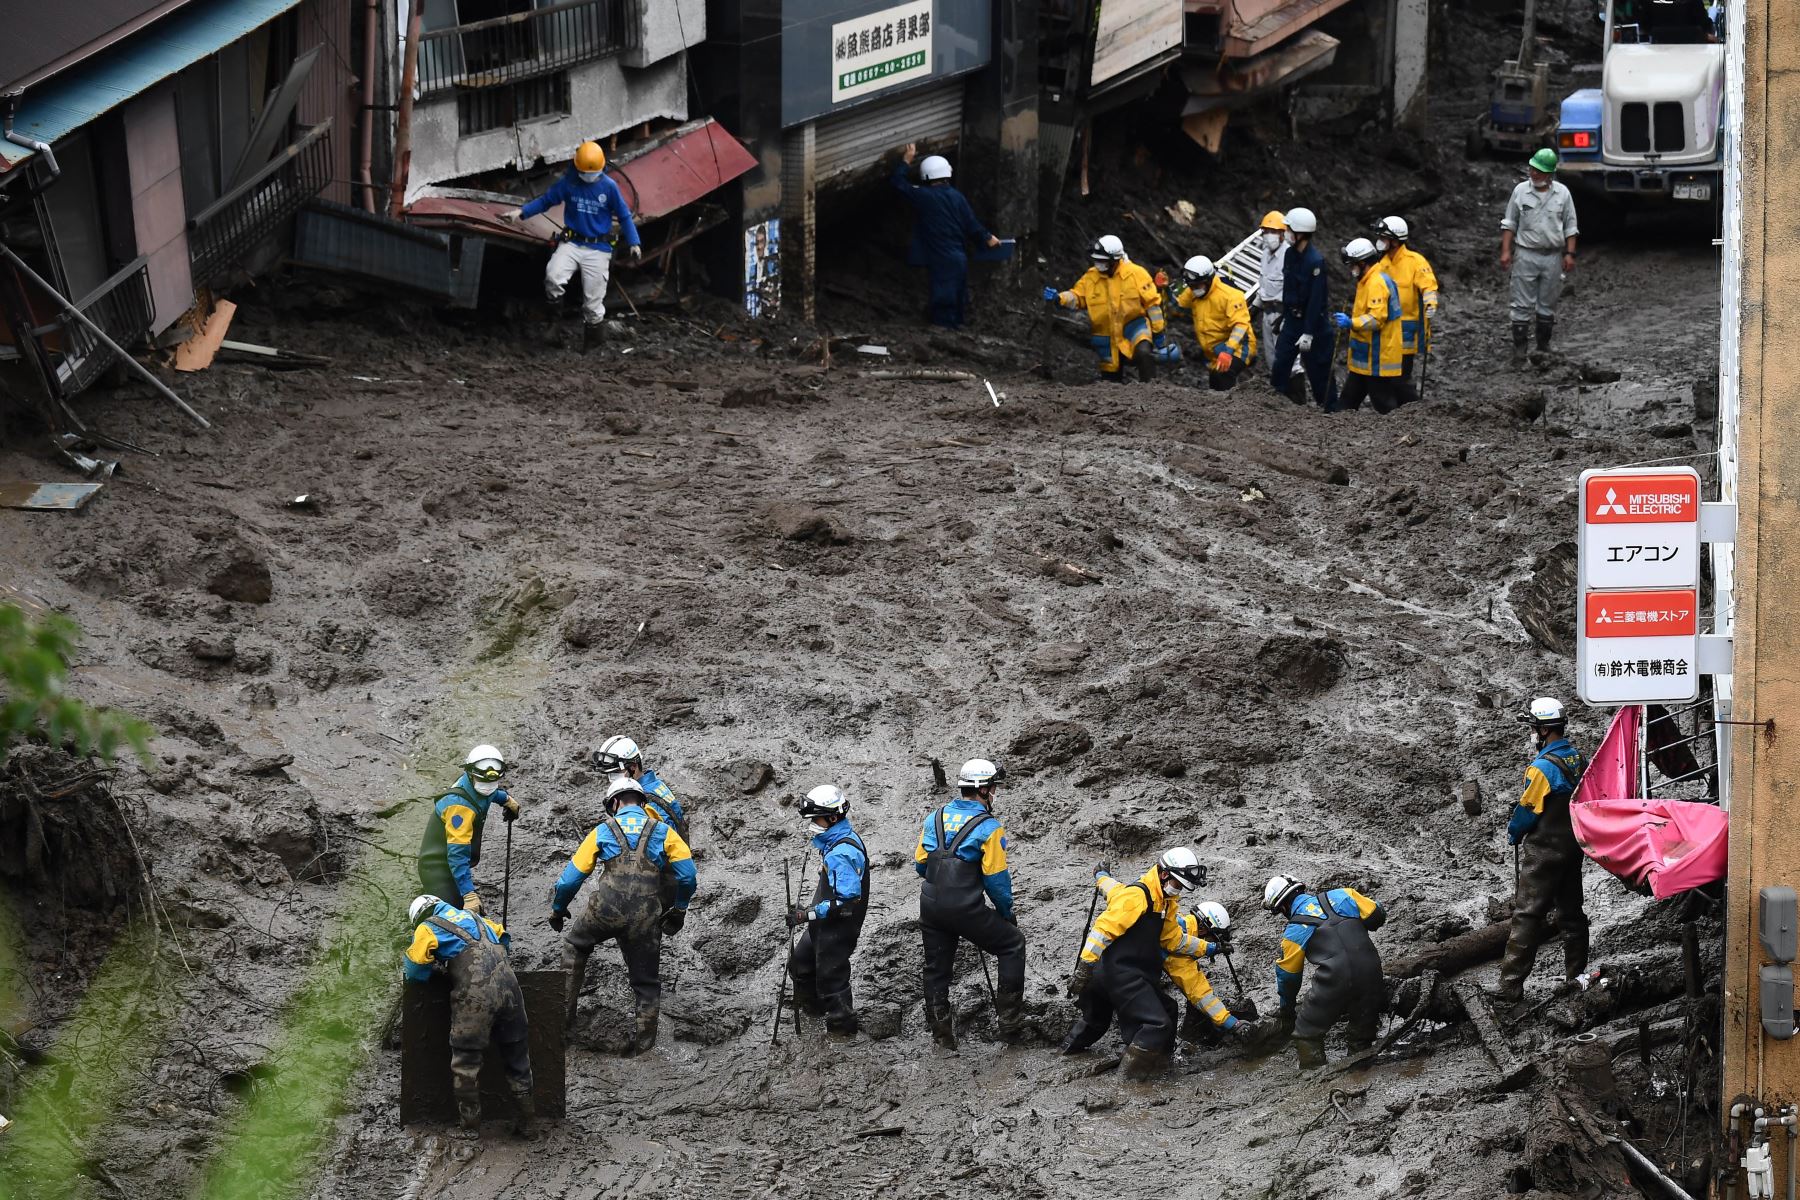 Soldados y socorristas, utilizando pértigas y excavadoras, despejaron montañas de escombros y se abrieron paso entre el barro en una búsqueda de sobrevivientes cada vez más desesperada. Foto: AFP